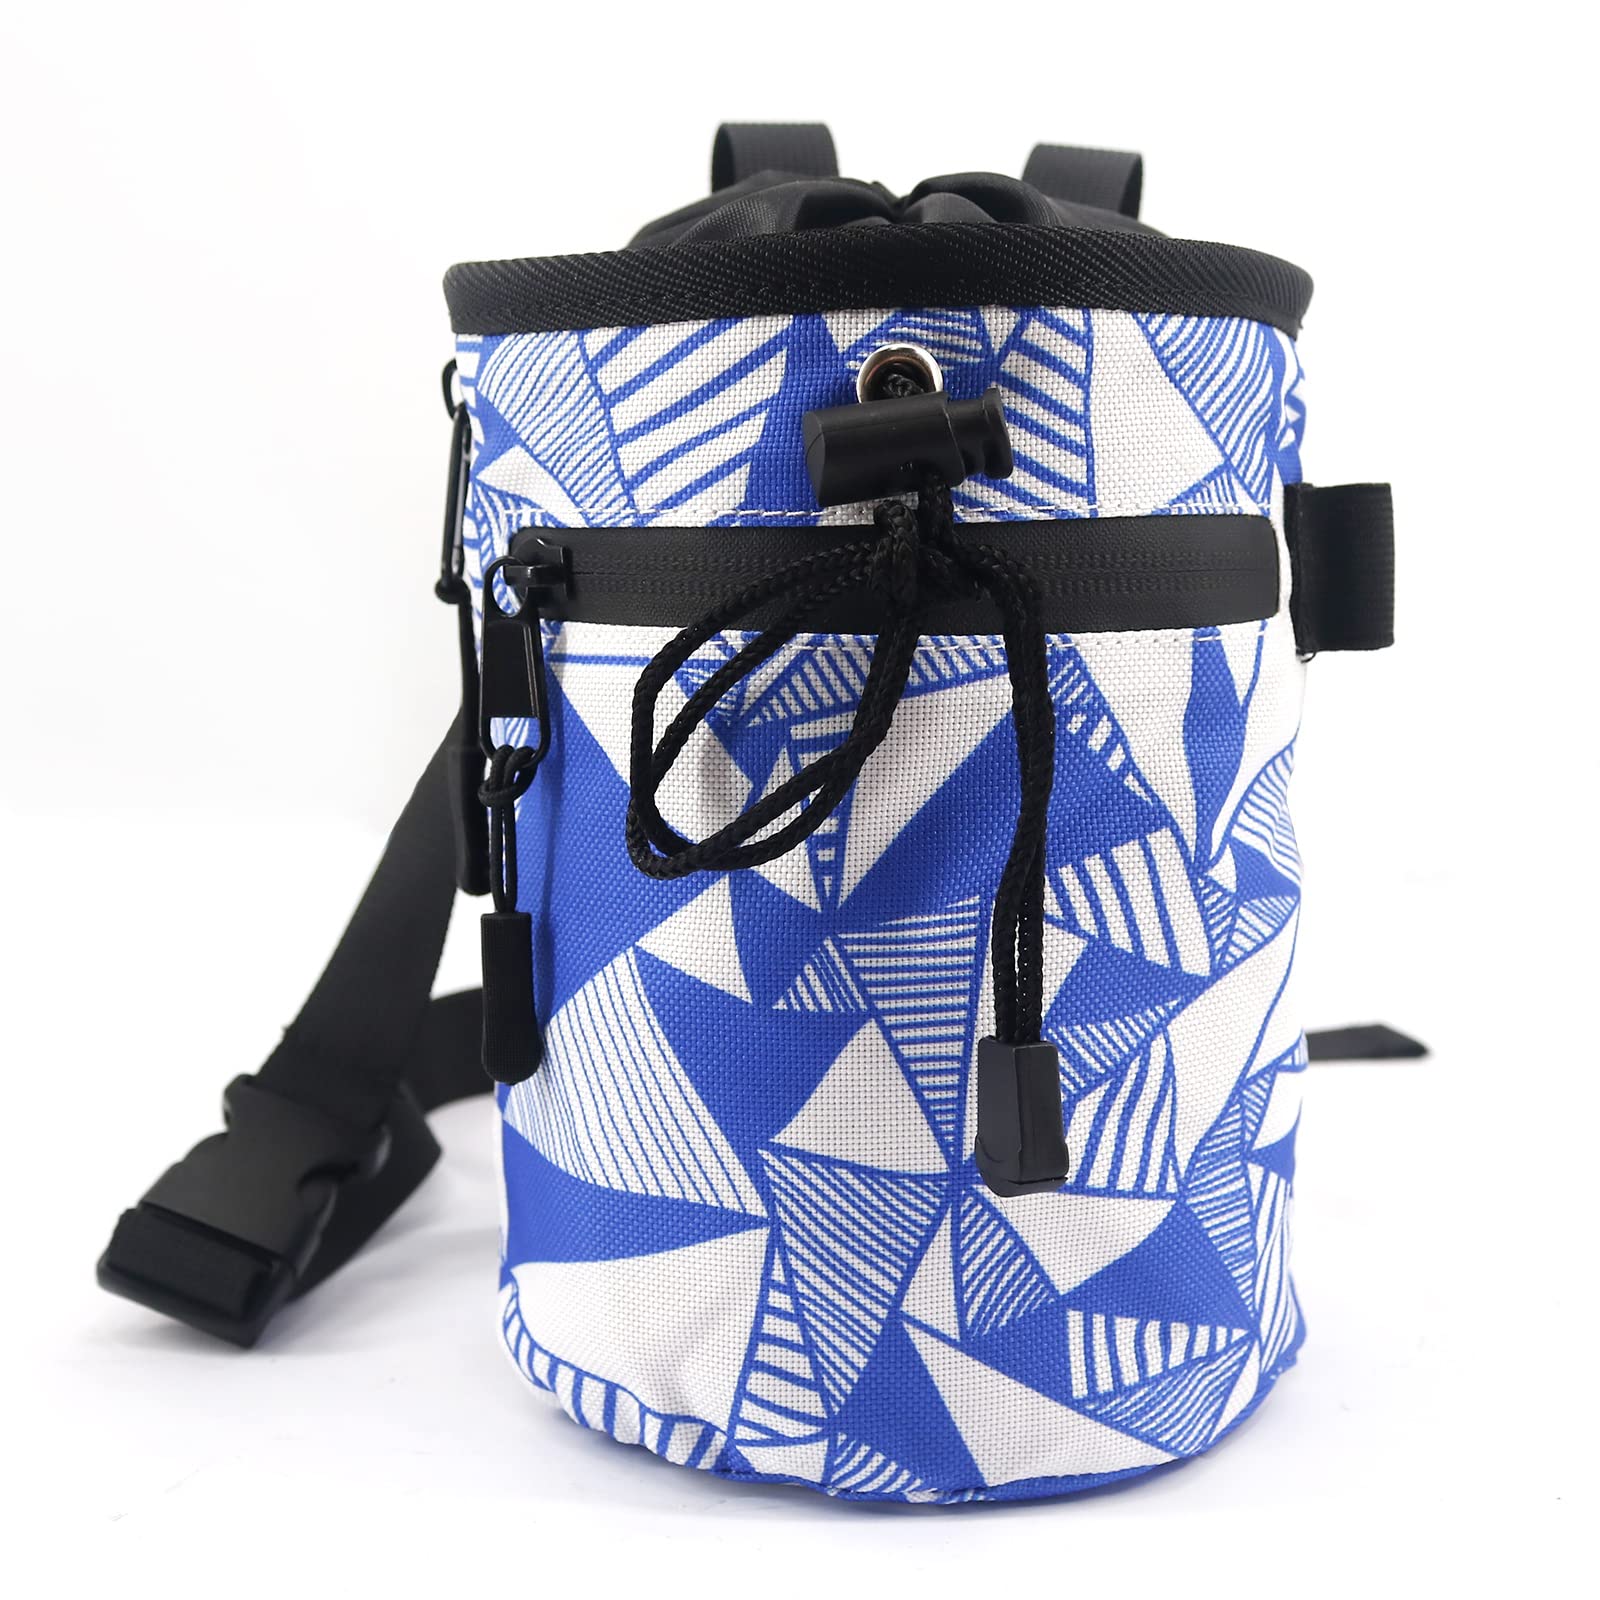 NewDoar Chalk Bag for Rock Climbing - Bouldering Chalk Bag Bucket with  Quick-Clip Belt and 2 Large Zippered Pockets - Rock Climbing Gear Equipment  Blue